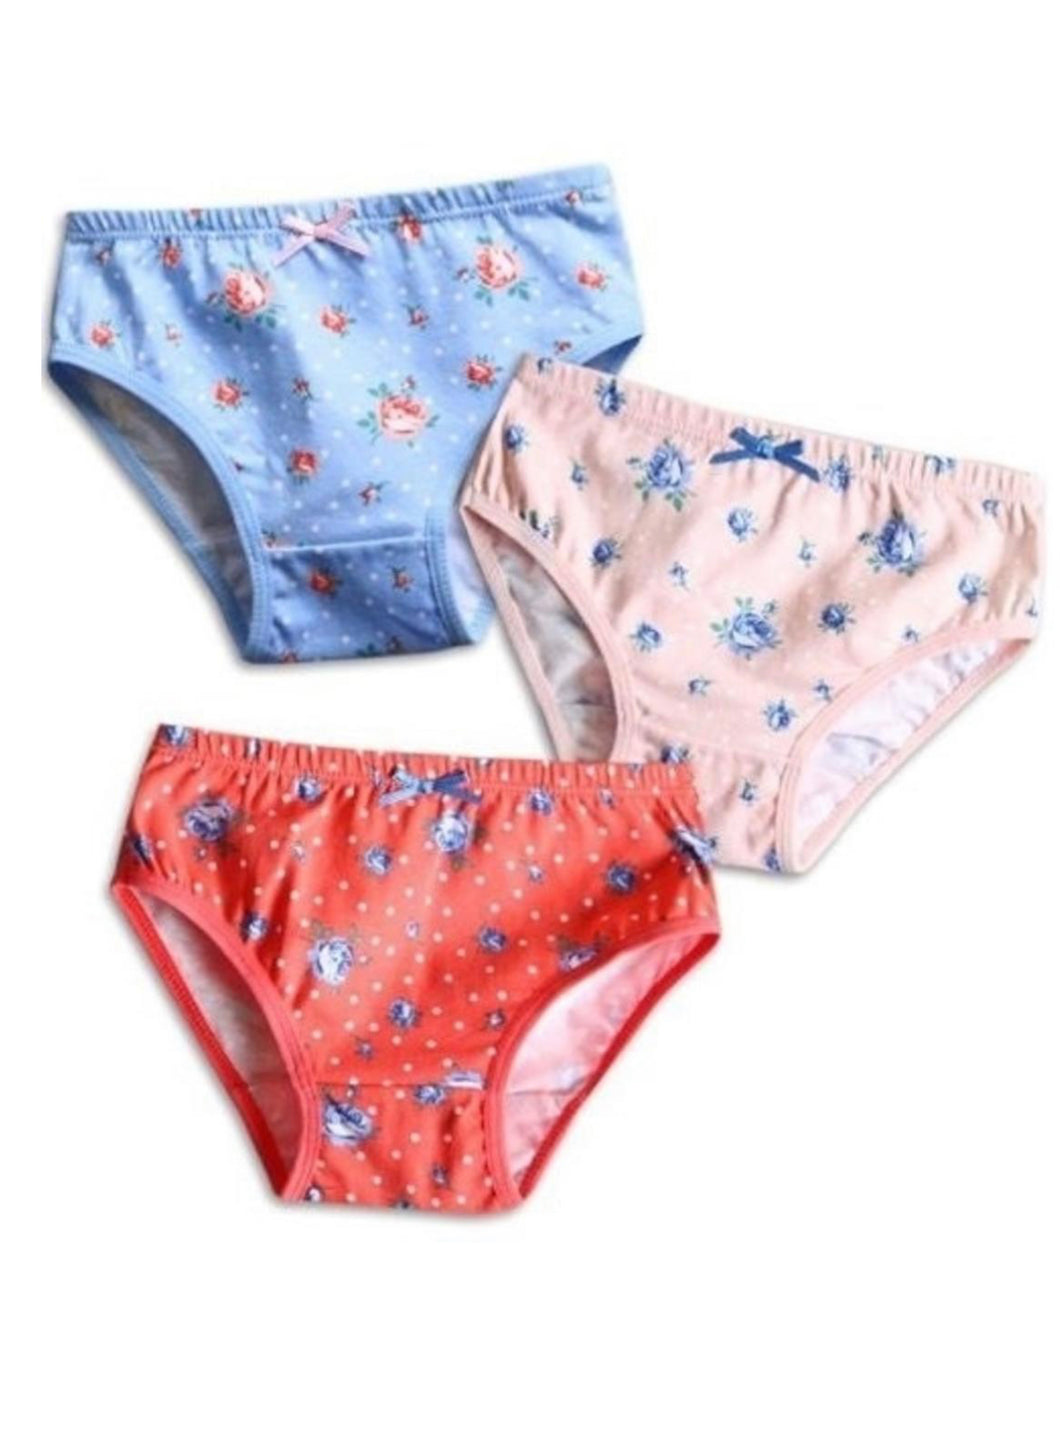 Floral Girls Underwear